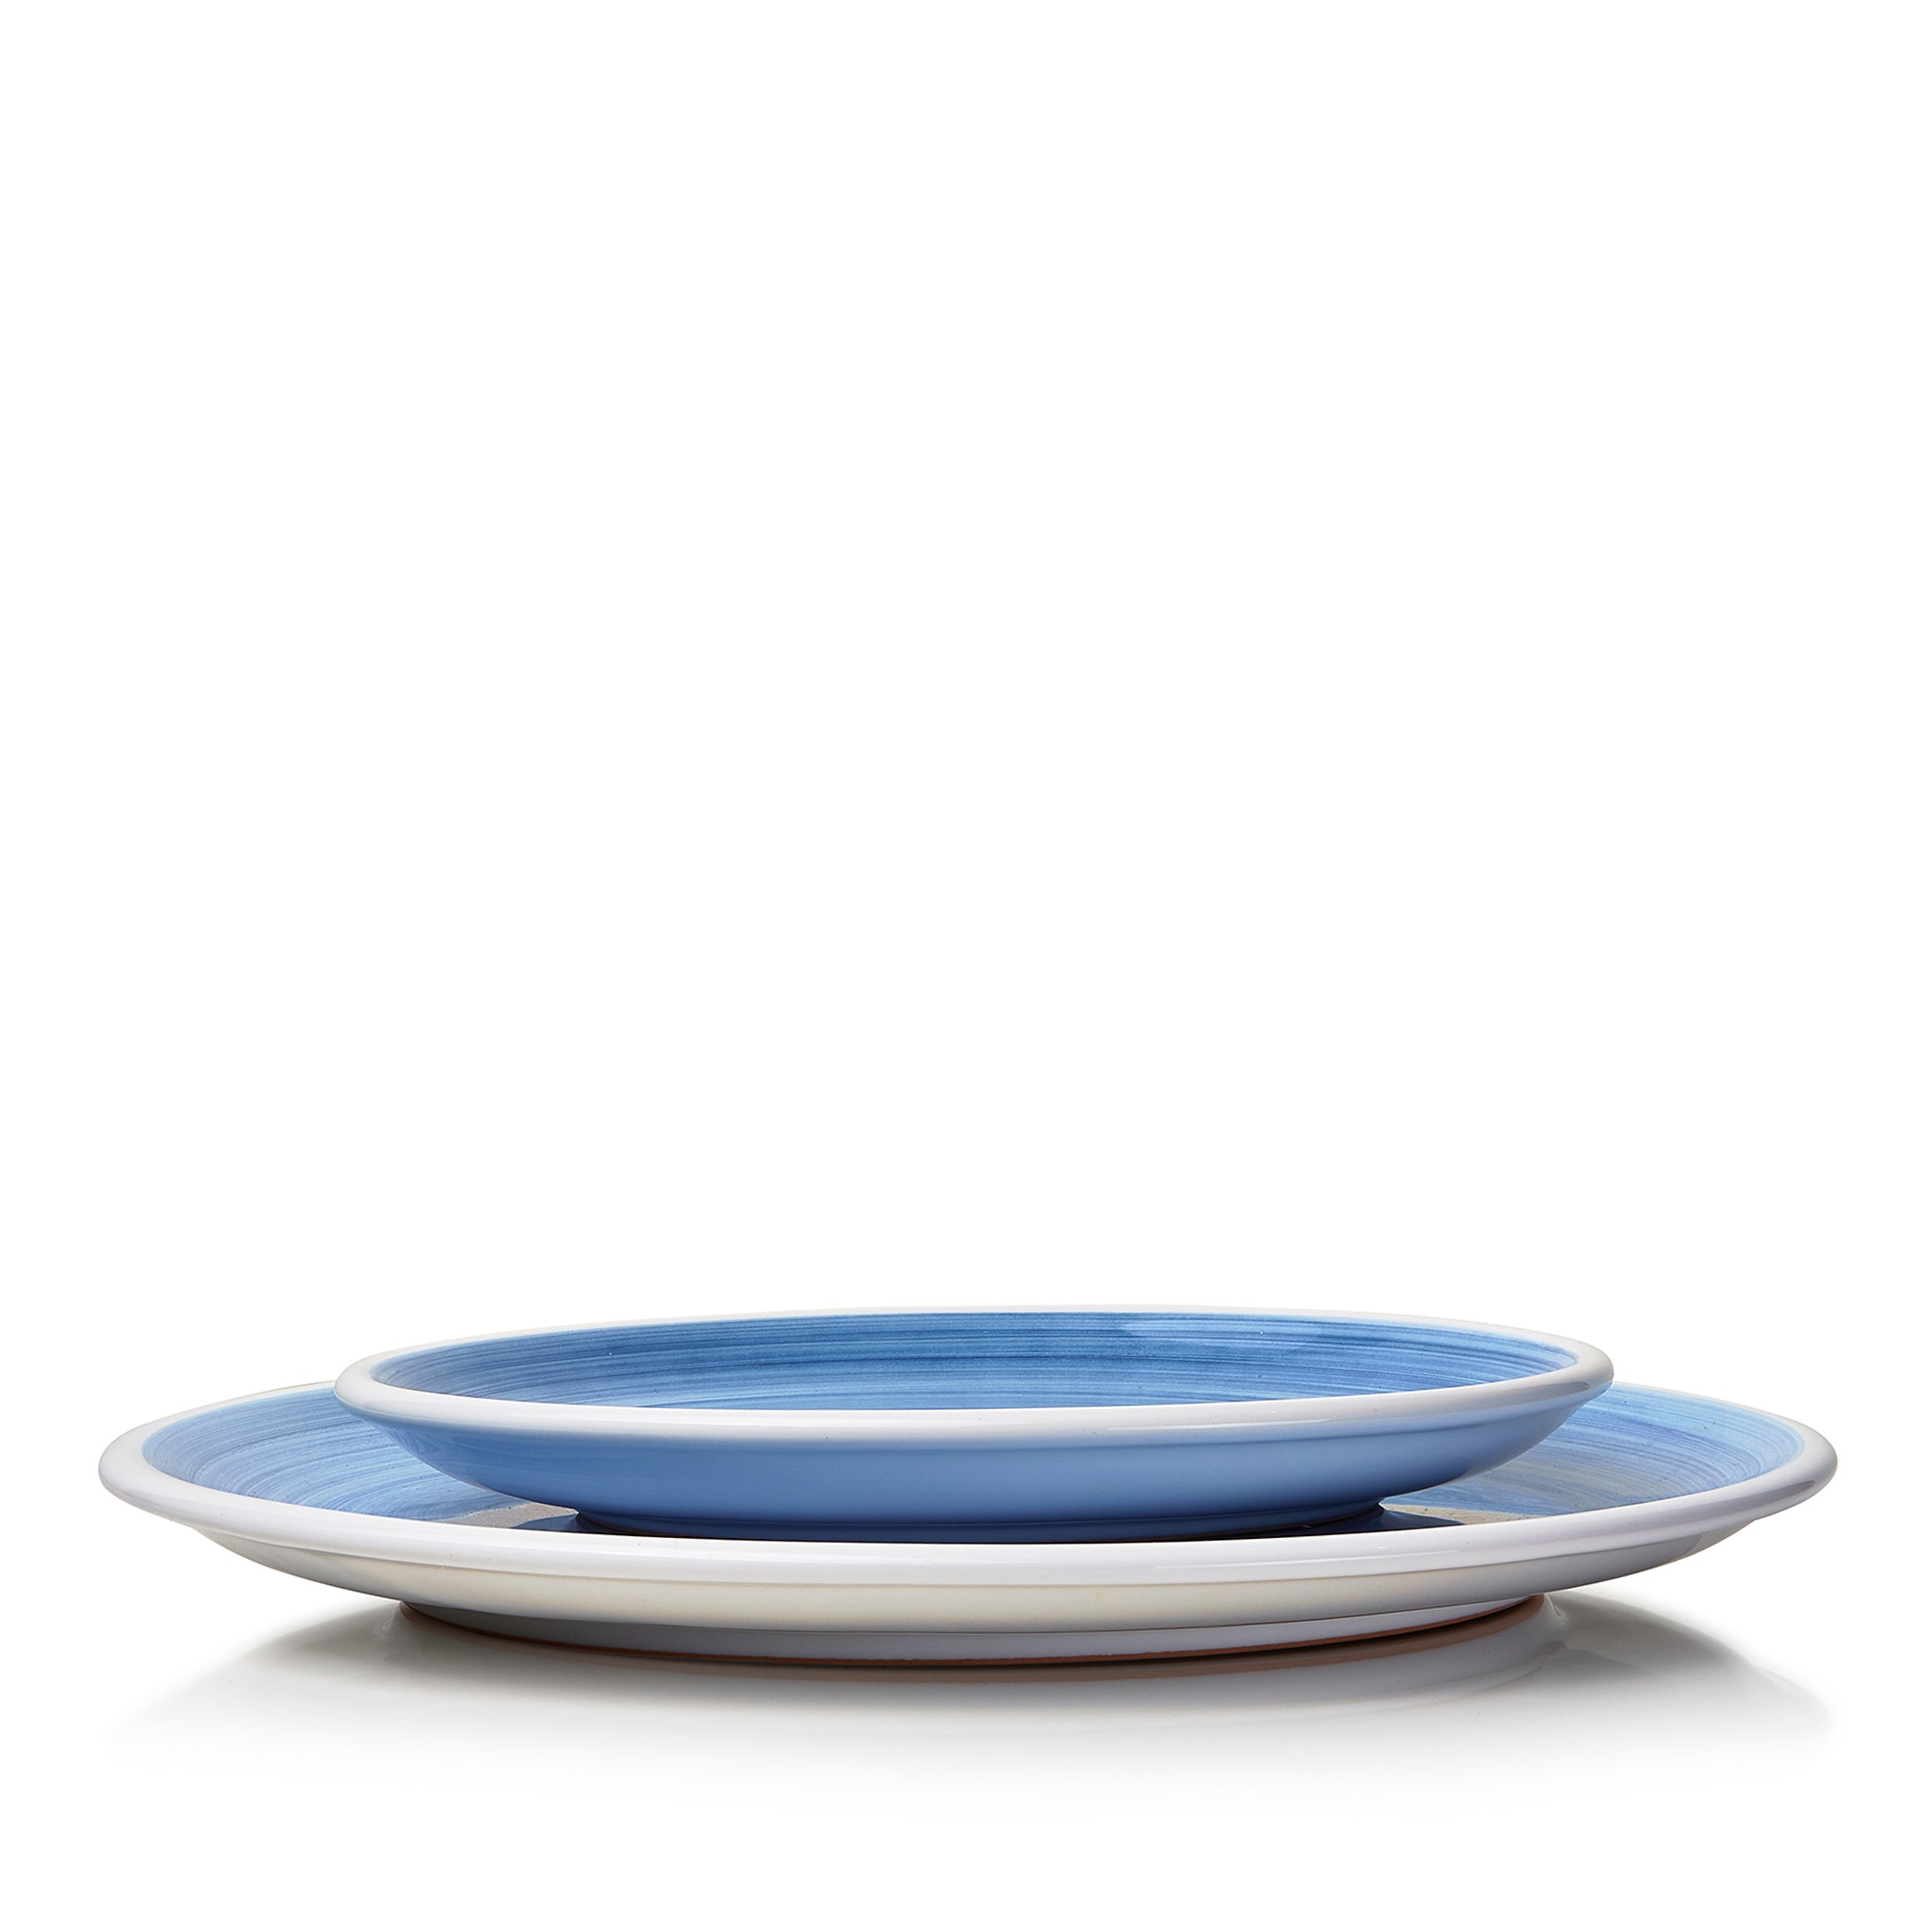 S&B 'Brushed' Ceramic Dinner Plate in Light Blue, 28cm